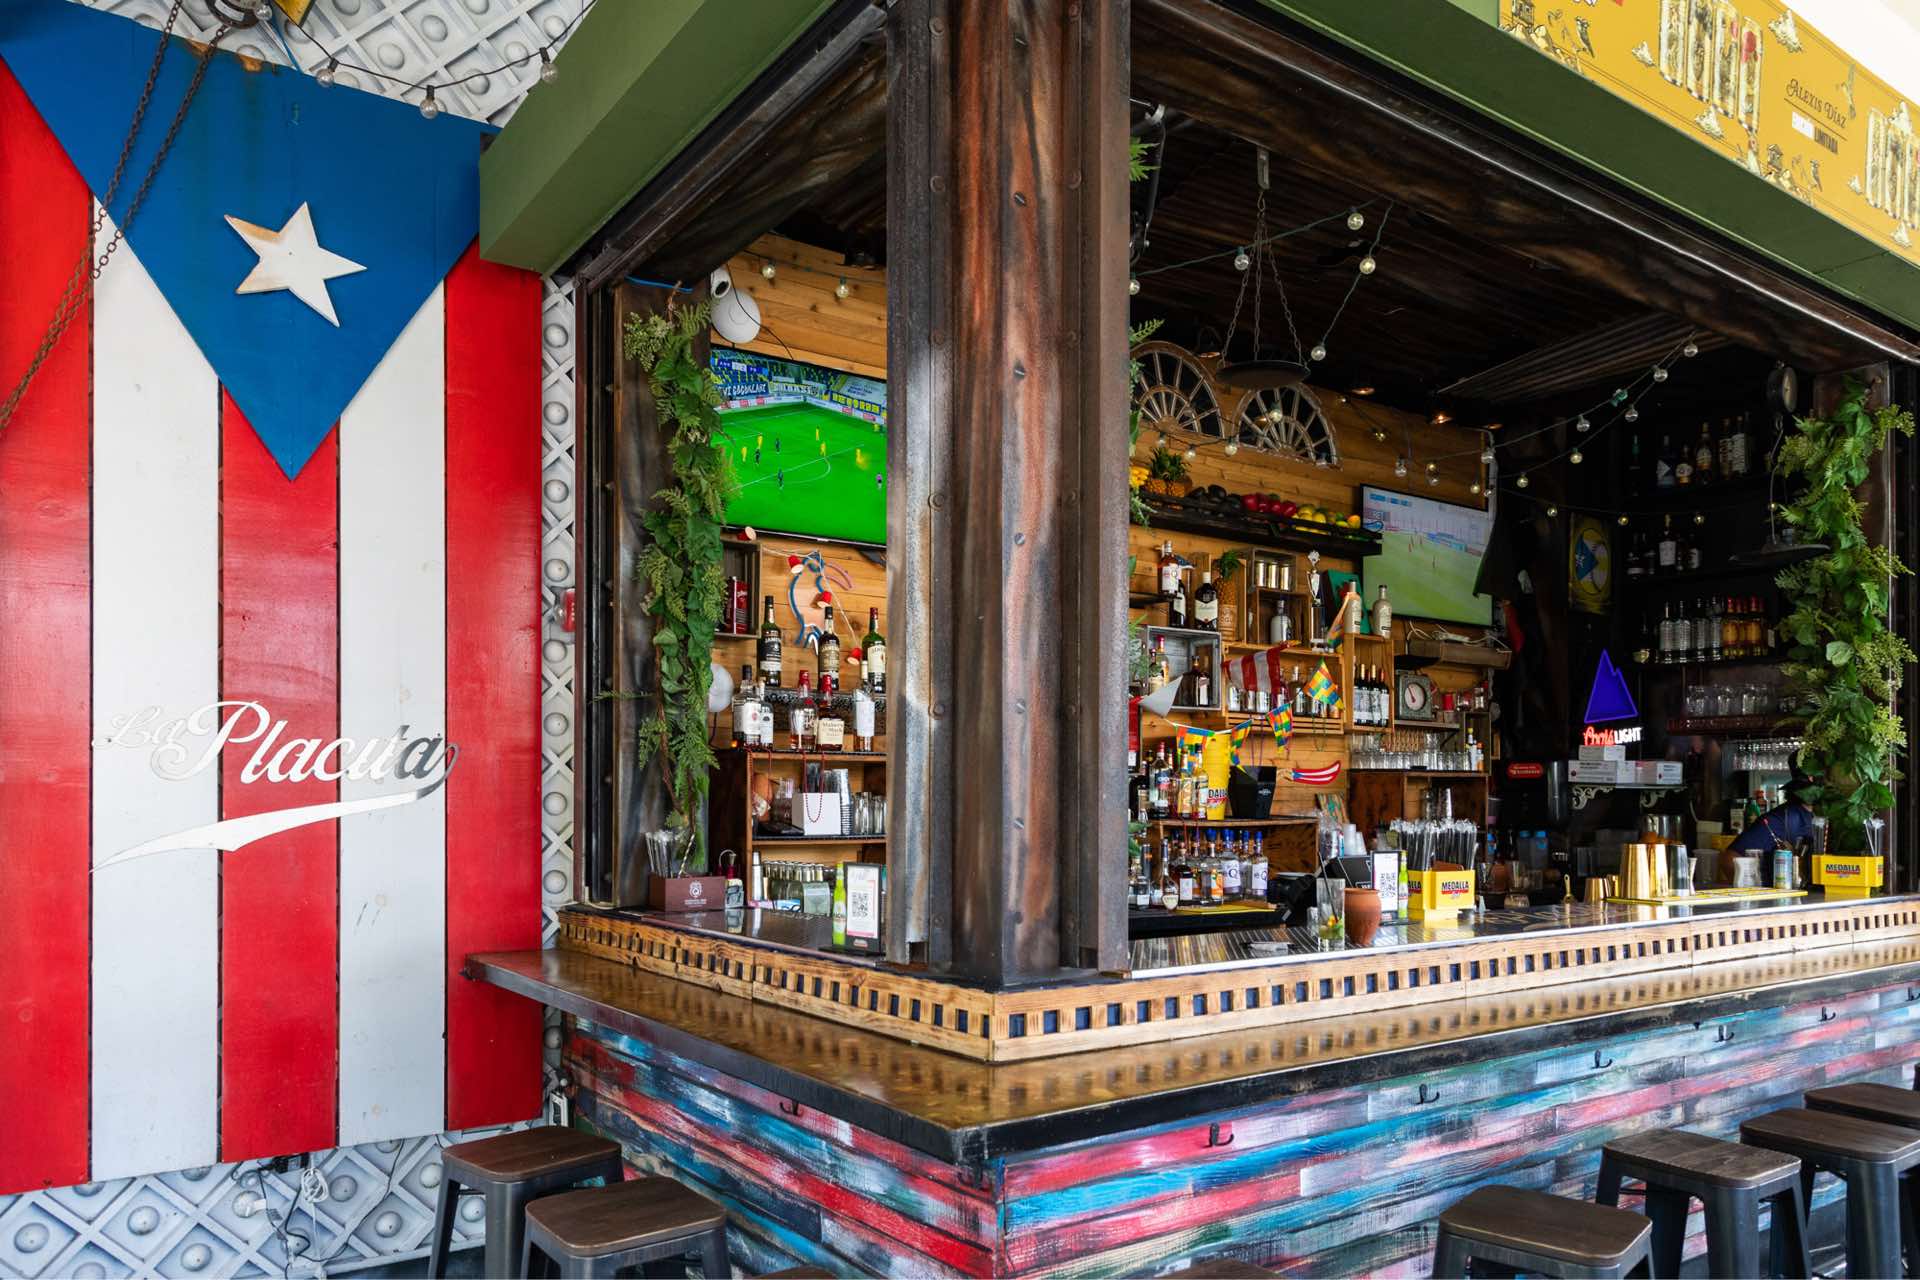 The bar at La Placita